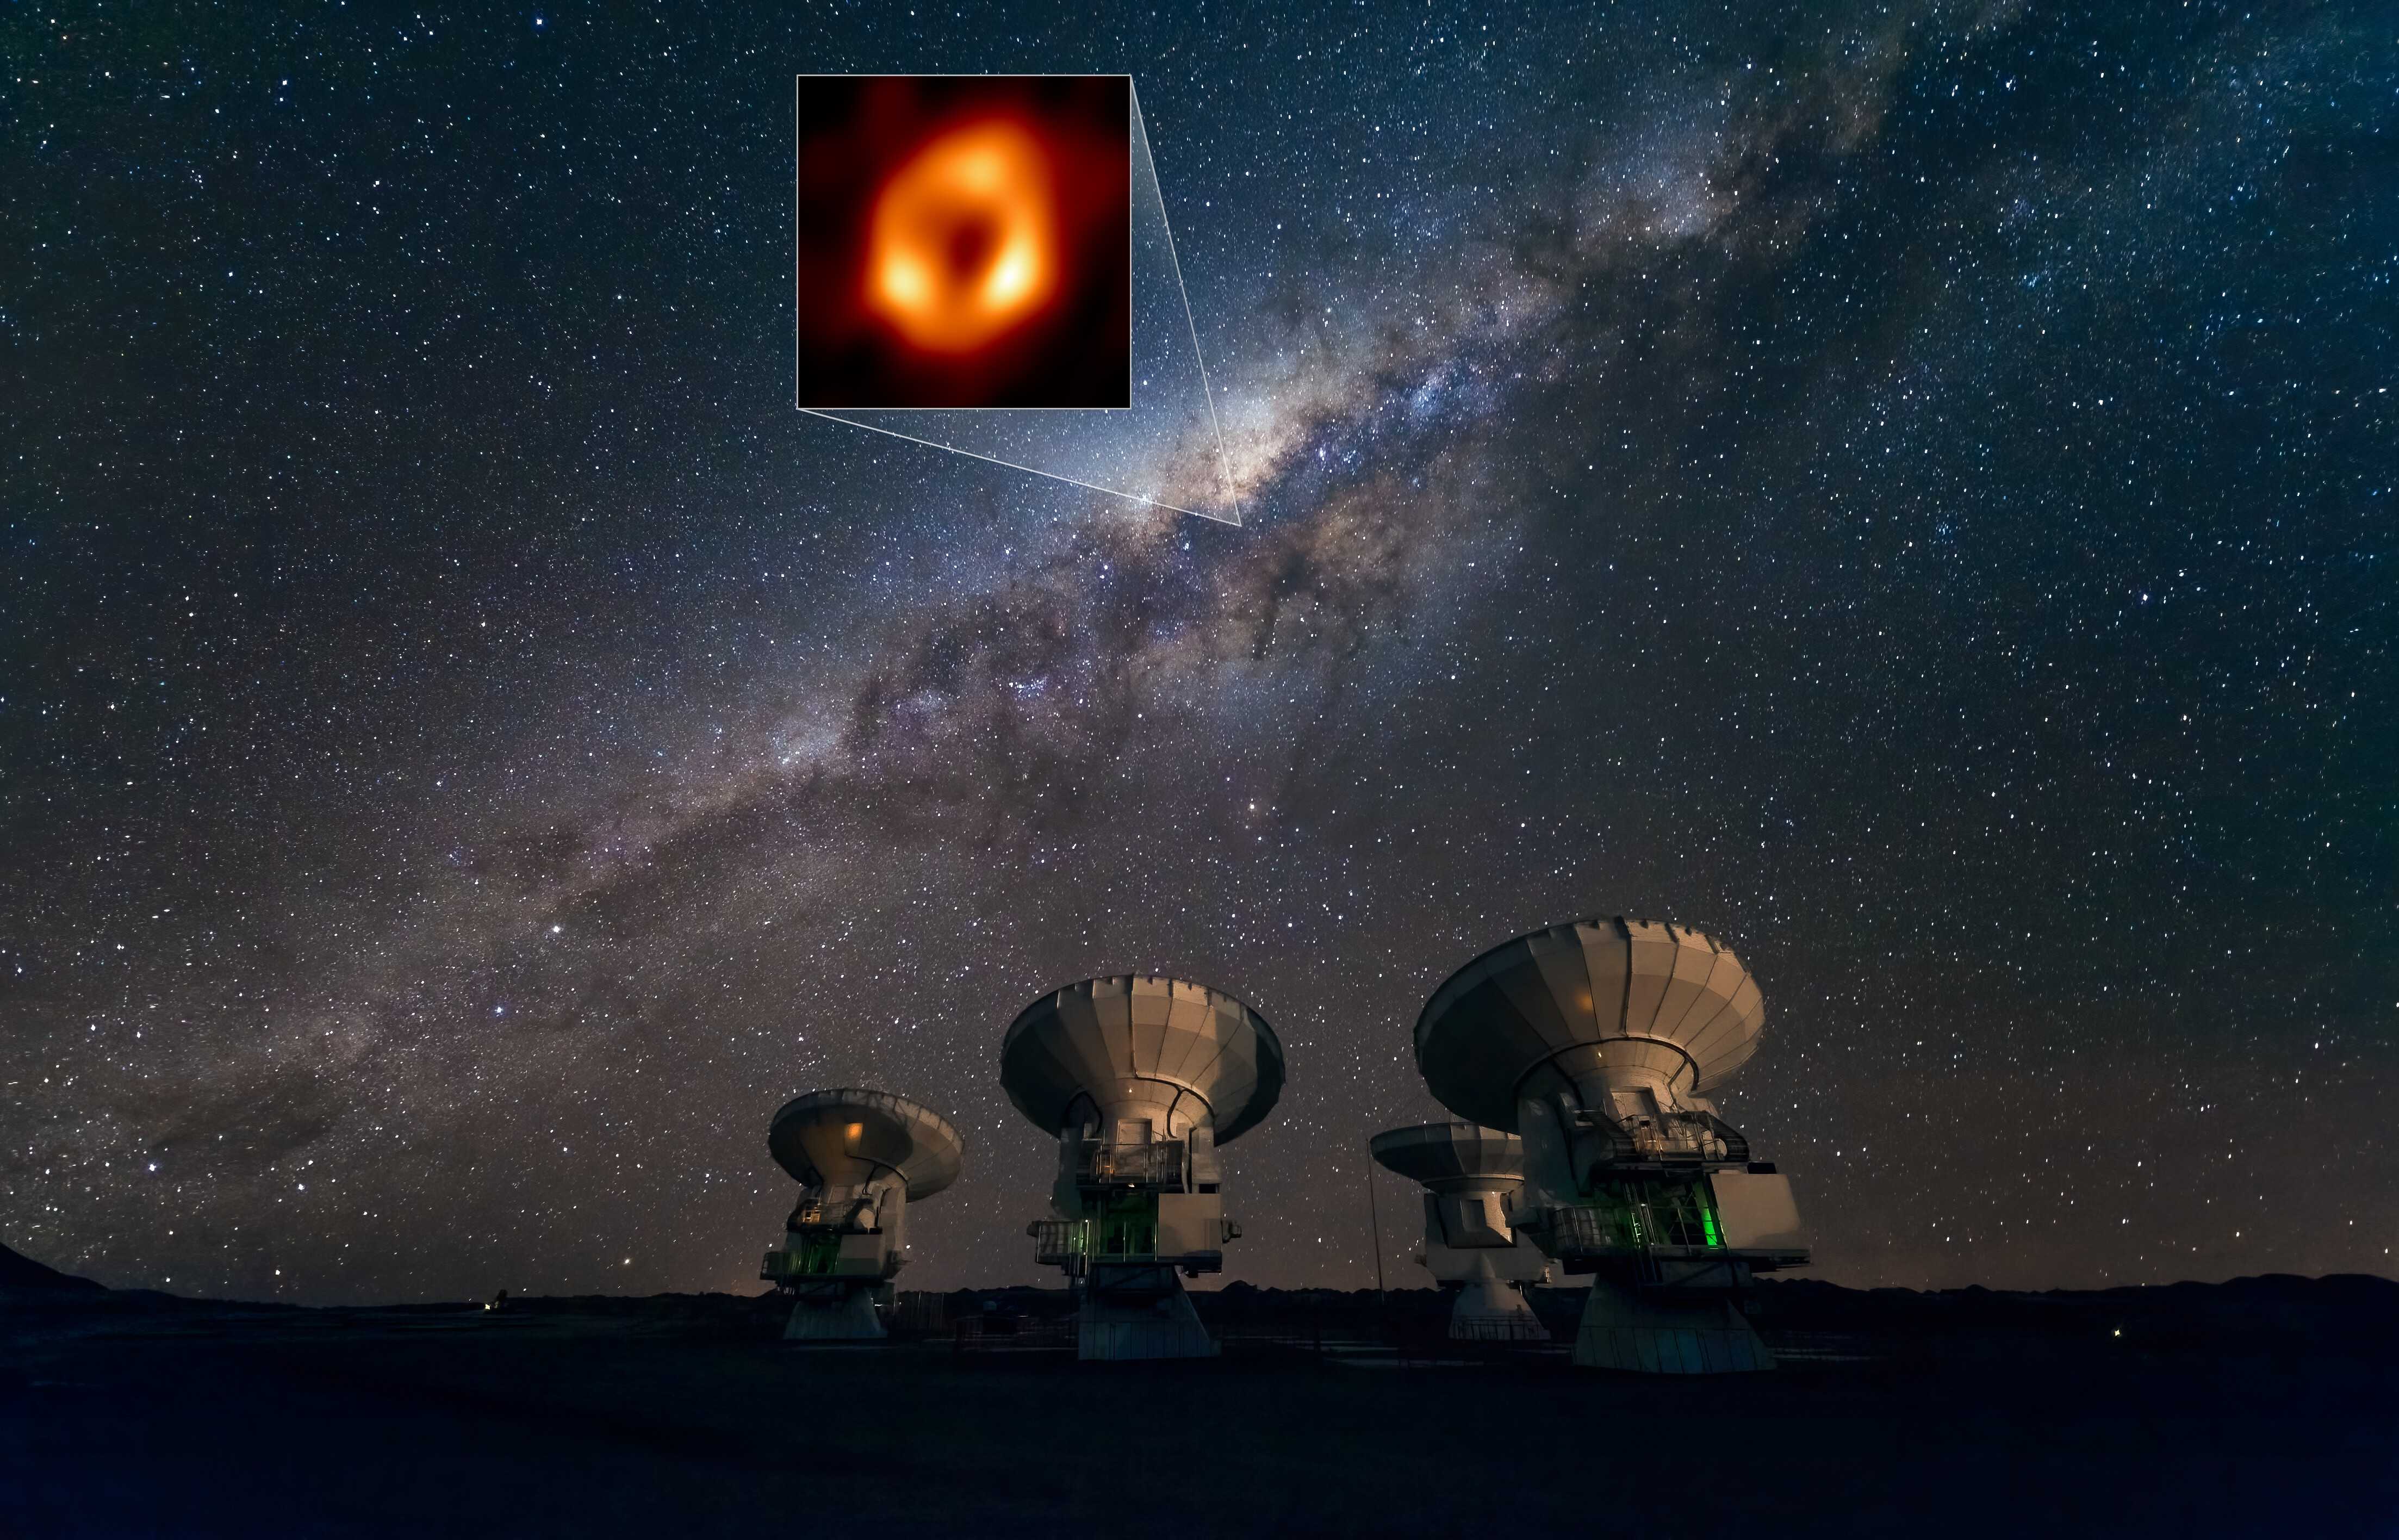 Телескоп горизонта событий впервые получил изображение тени сверхмассивной черной дыры в центре Млечного Пути